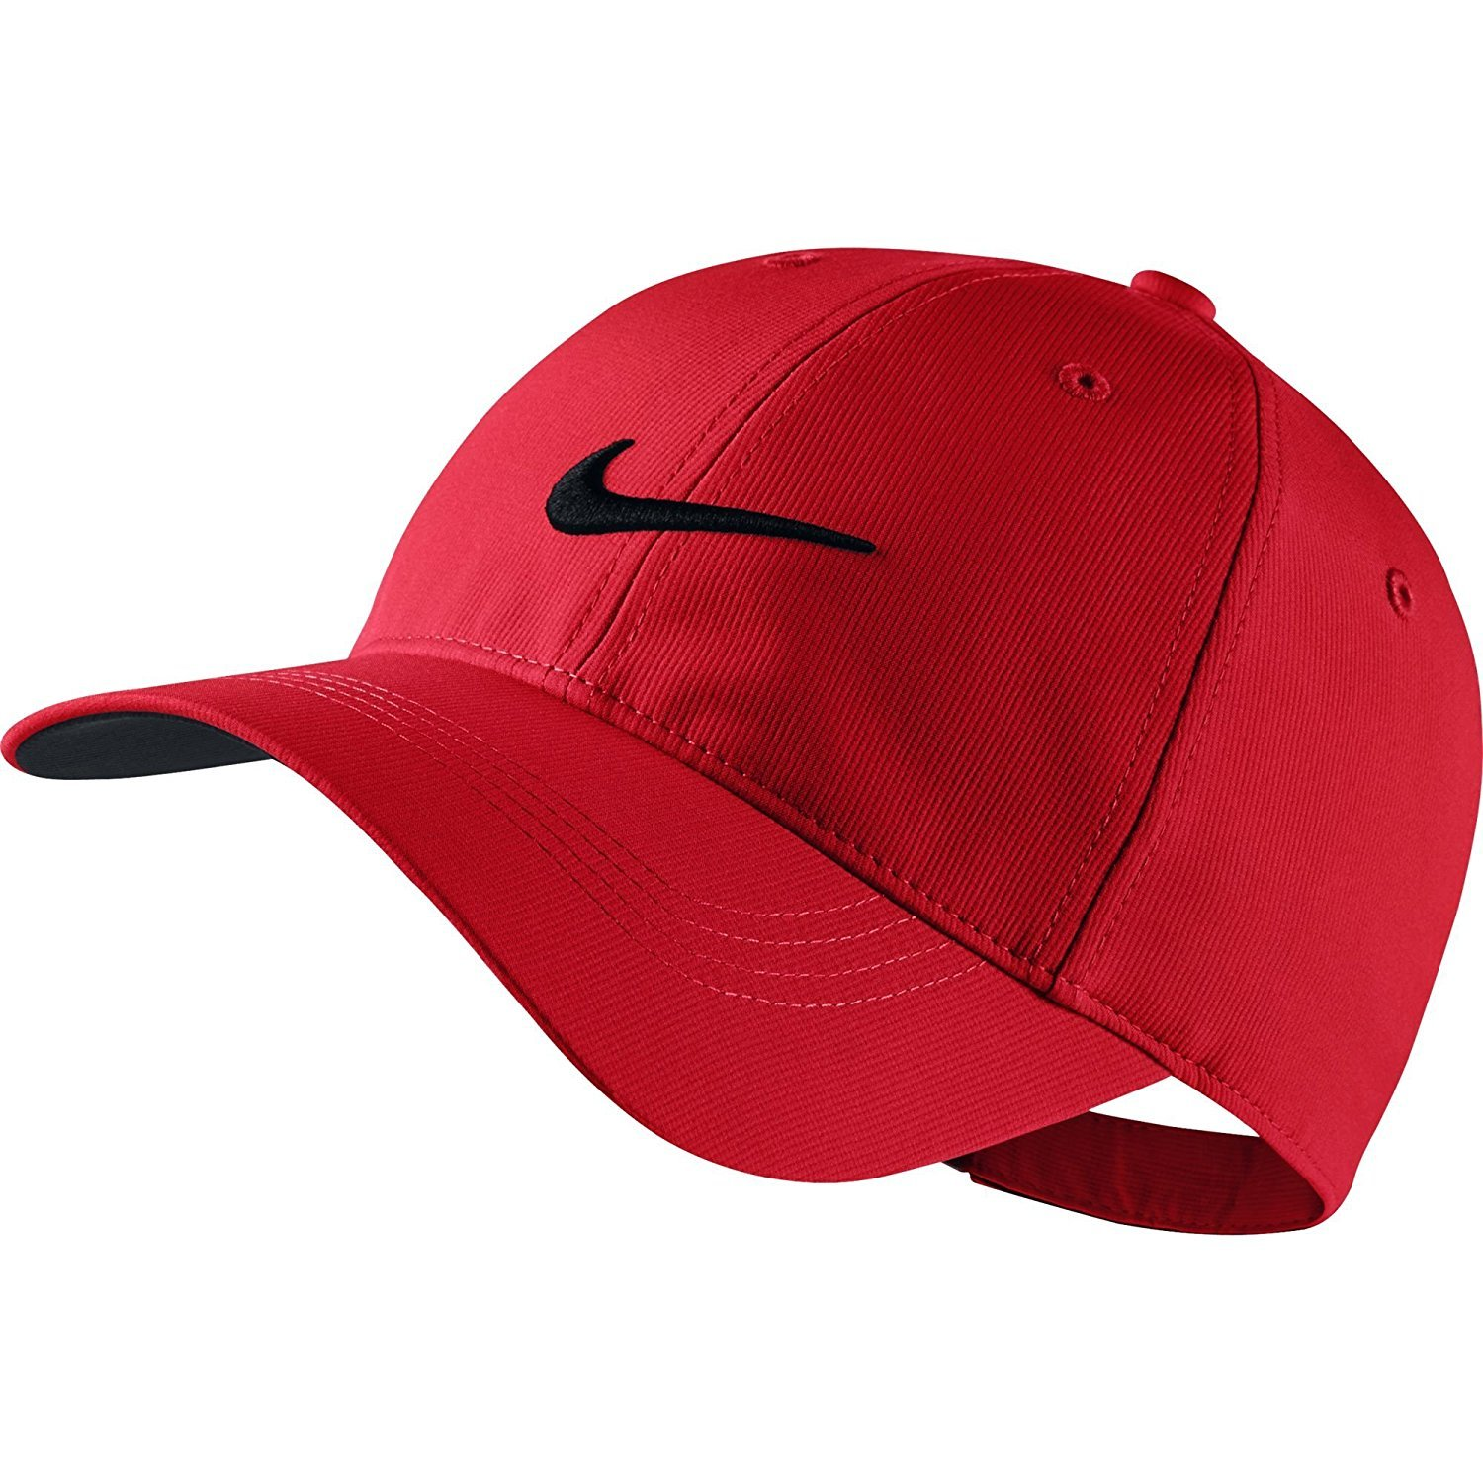 나이키 레거시91 남성 골프모자 레드 Nike Golf Cap 